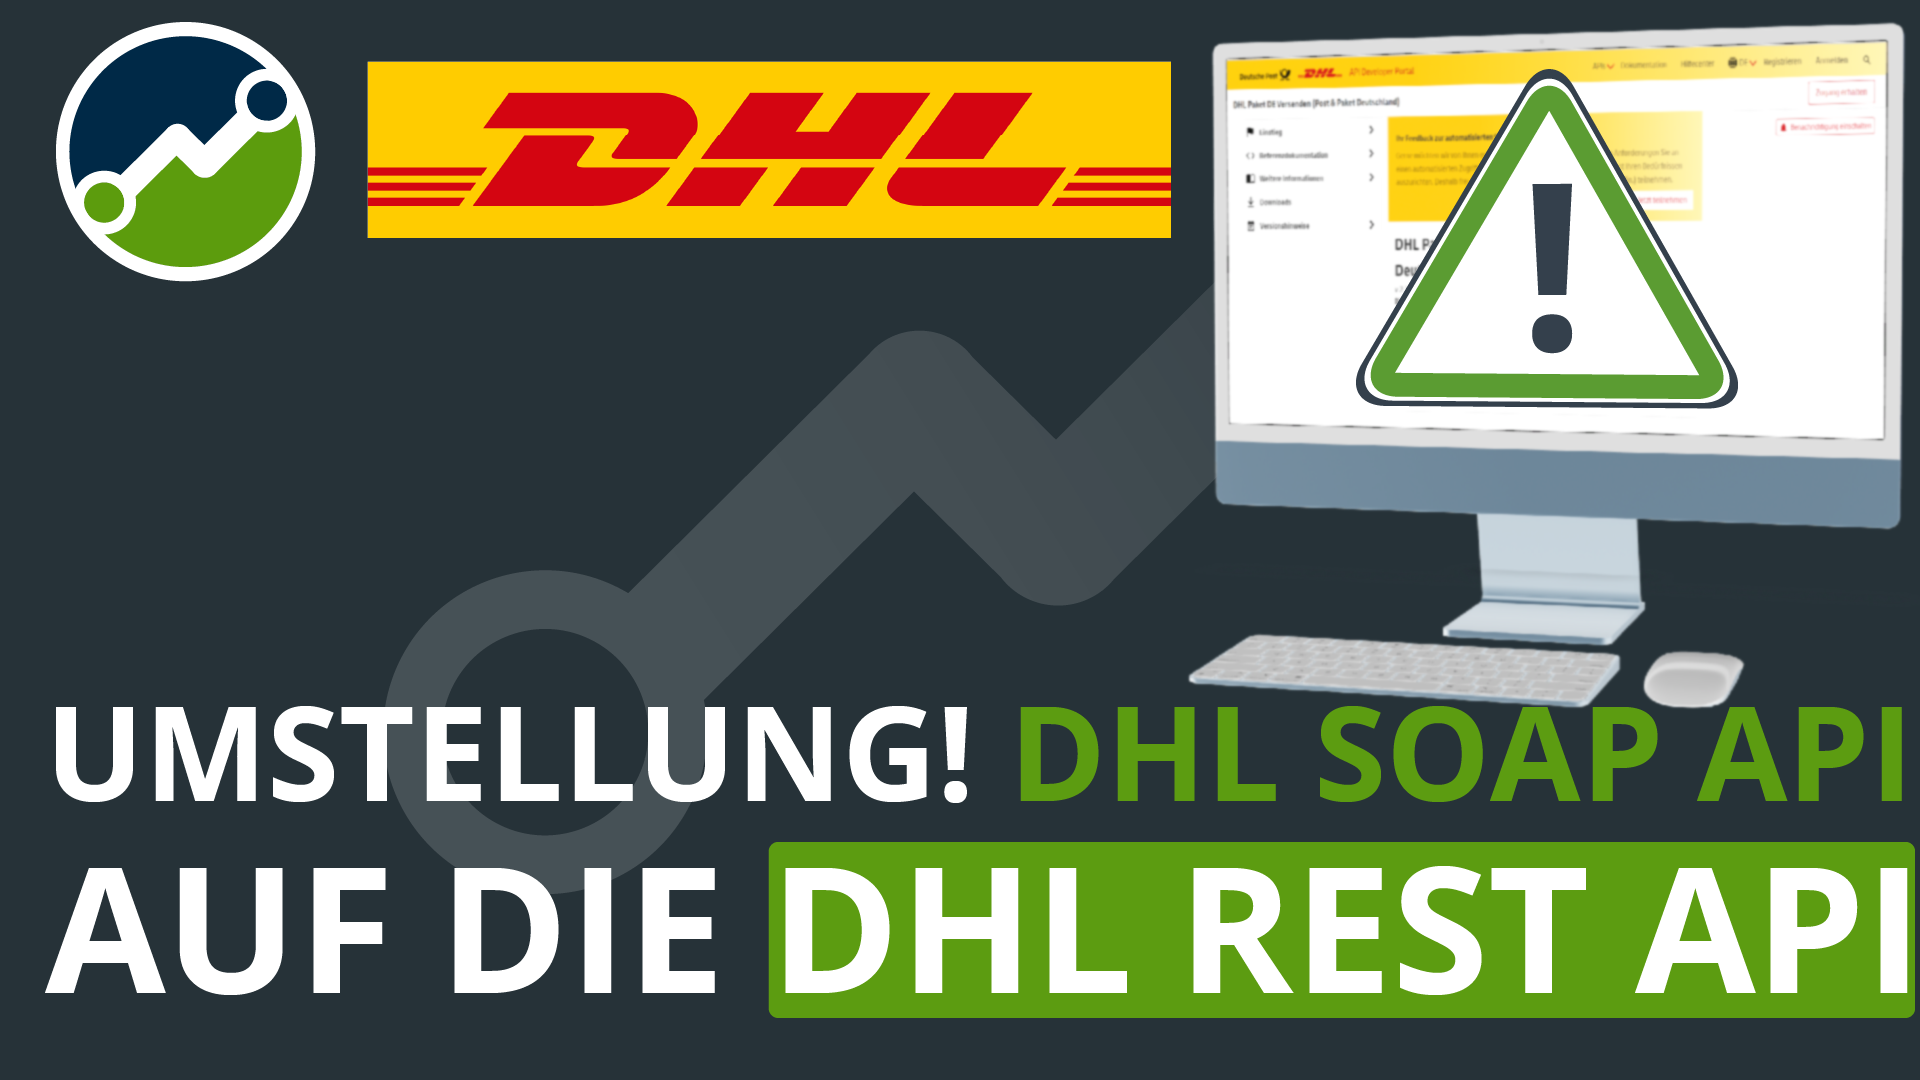 Brandneu und besser als je zuvor: die neue DHL Rest API